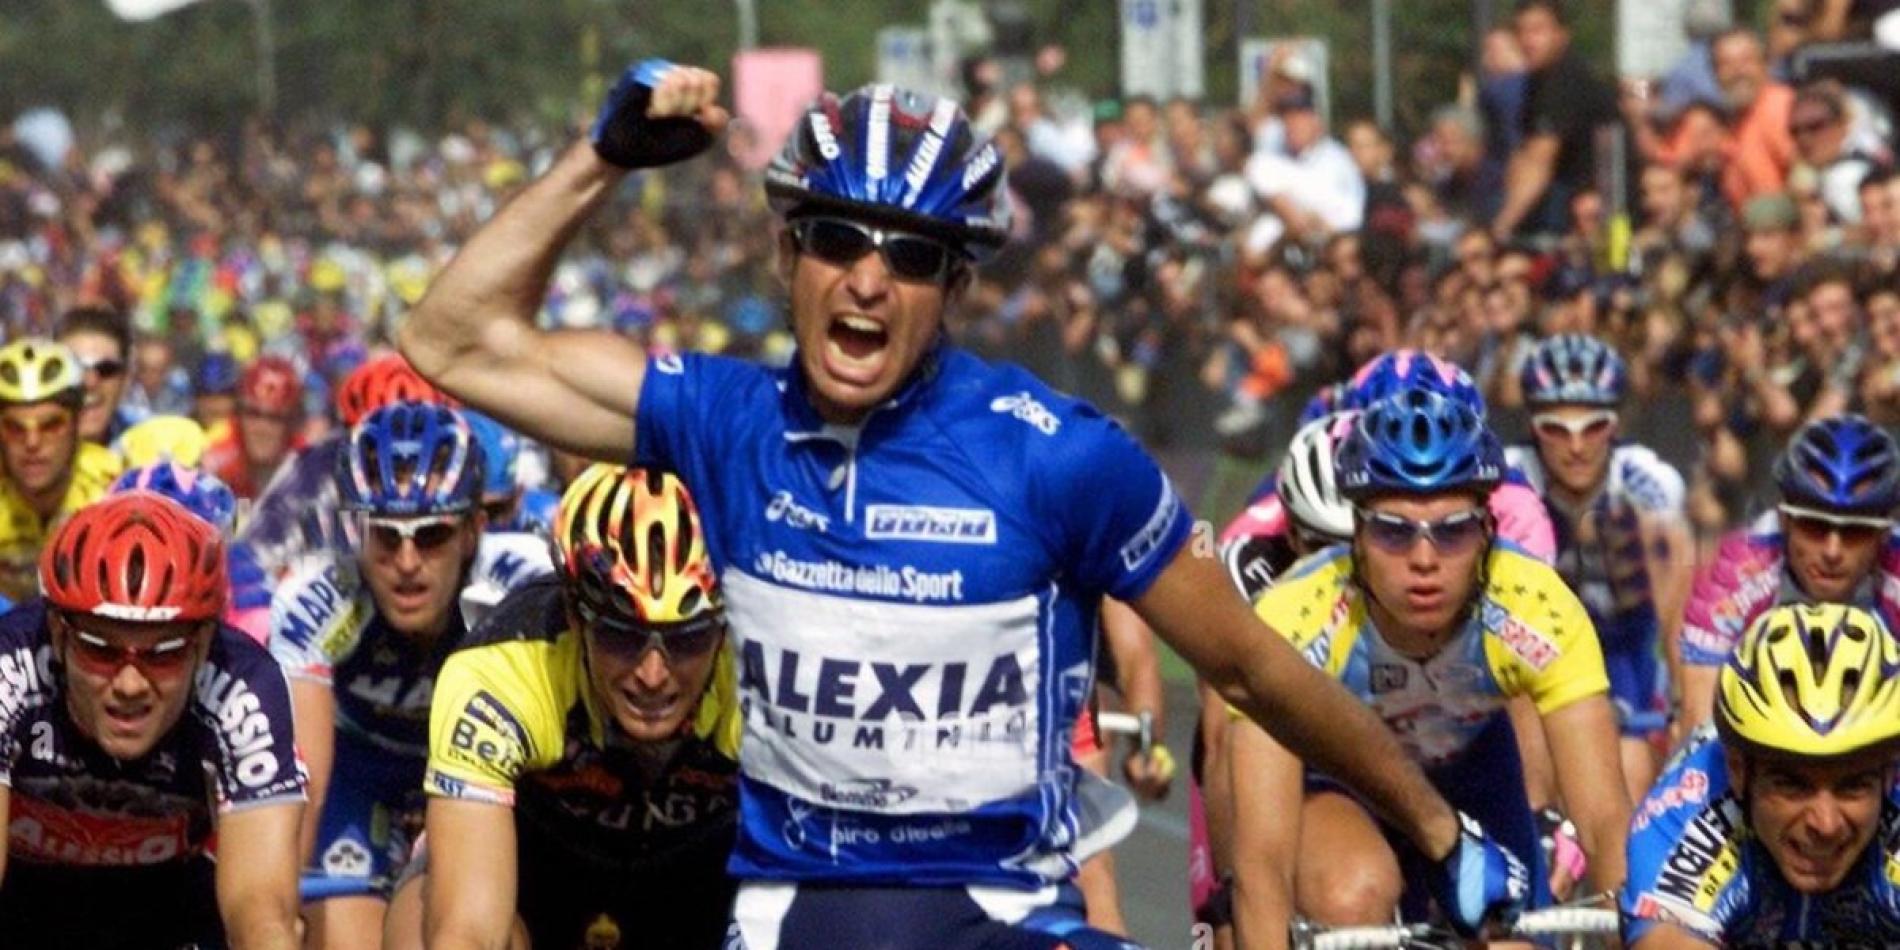 Fausto Coppi, all’asta i cimeli del Campionissimo del ciclismo